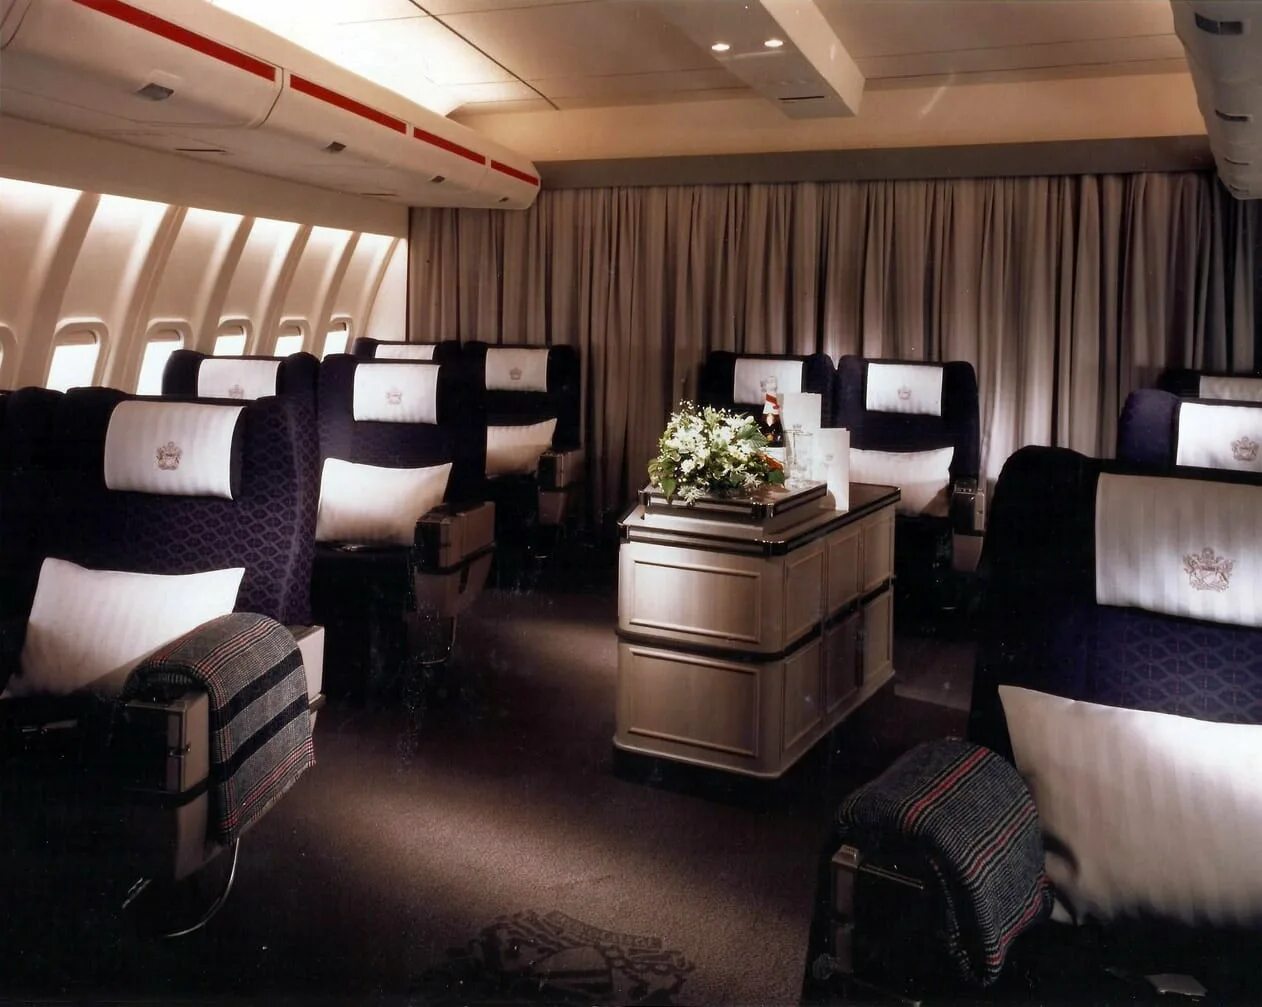 First class going first class. British Airways первый класс. British Airways first class 747. Boeing 747 first class. Бизнес класс British Airways 747.